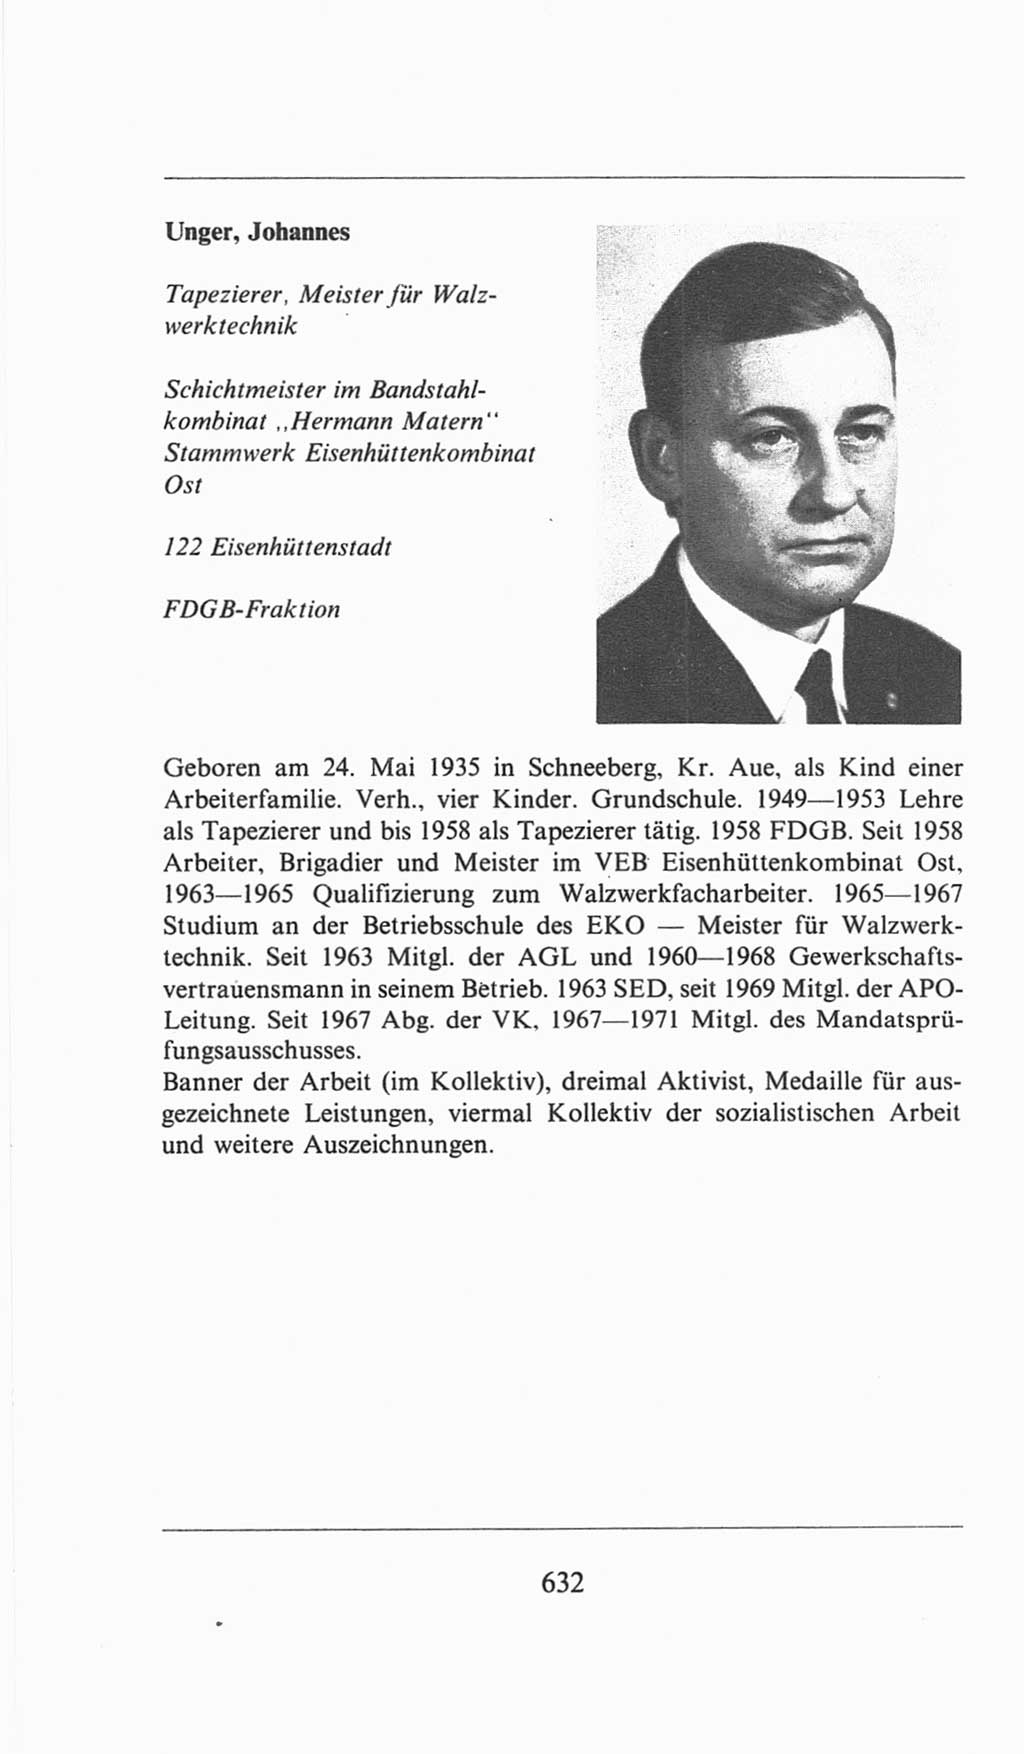 Volkskammer (VK) der Deutschen Demokratischen Republik (DDR), 6. Wahlperiode 1971-1976, Seite 632 (VK. DDR 6. WP. 1971-1976, S. 632)